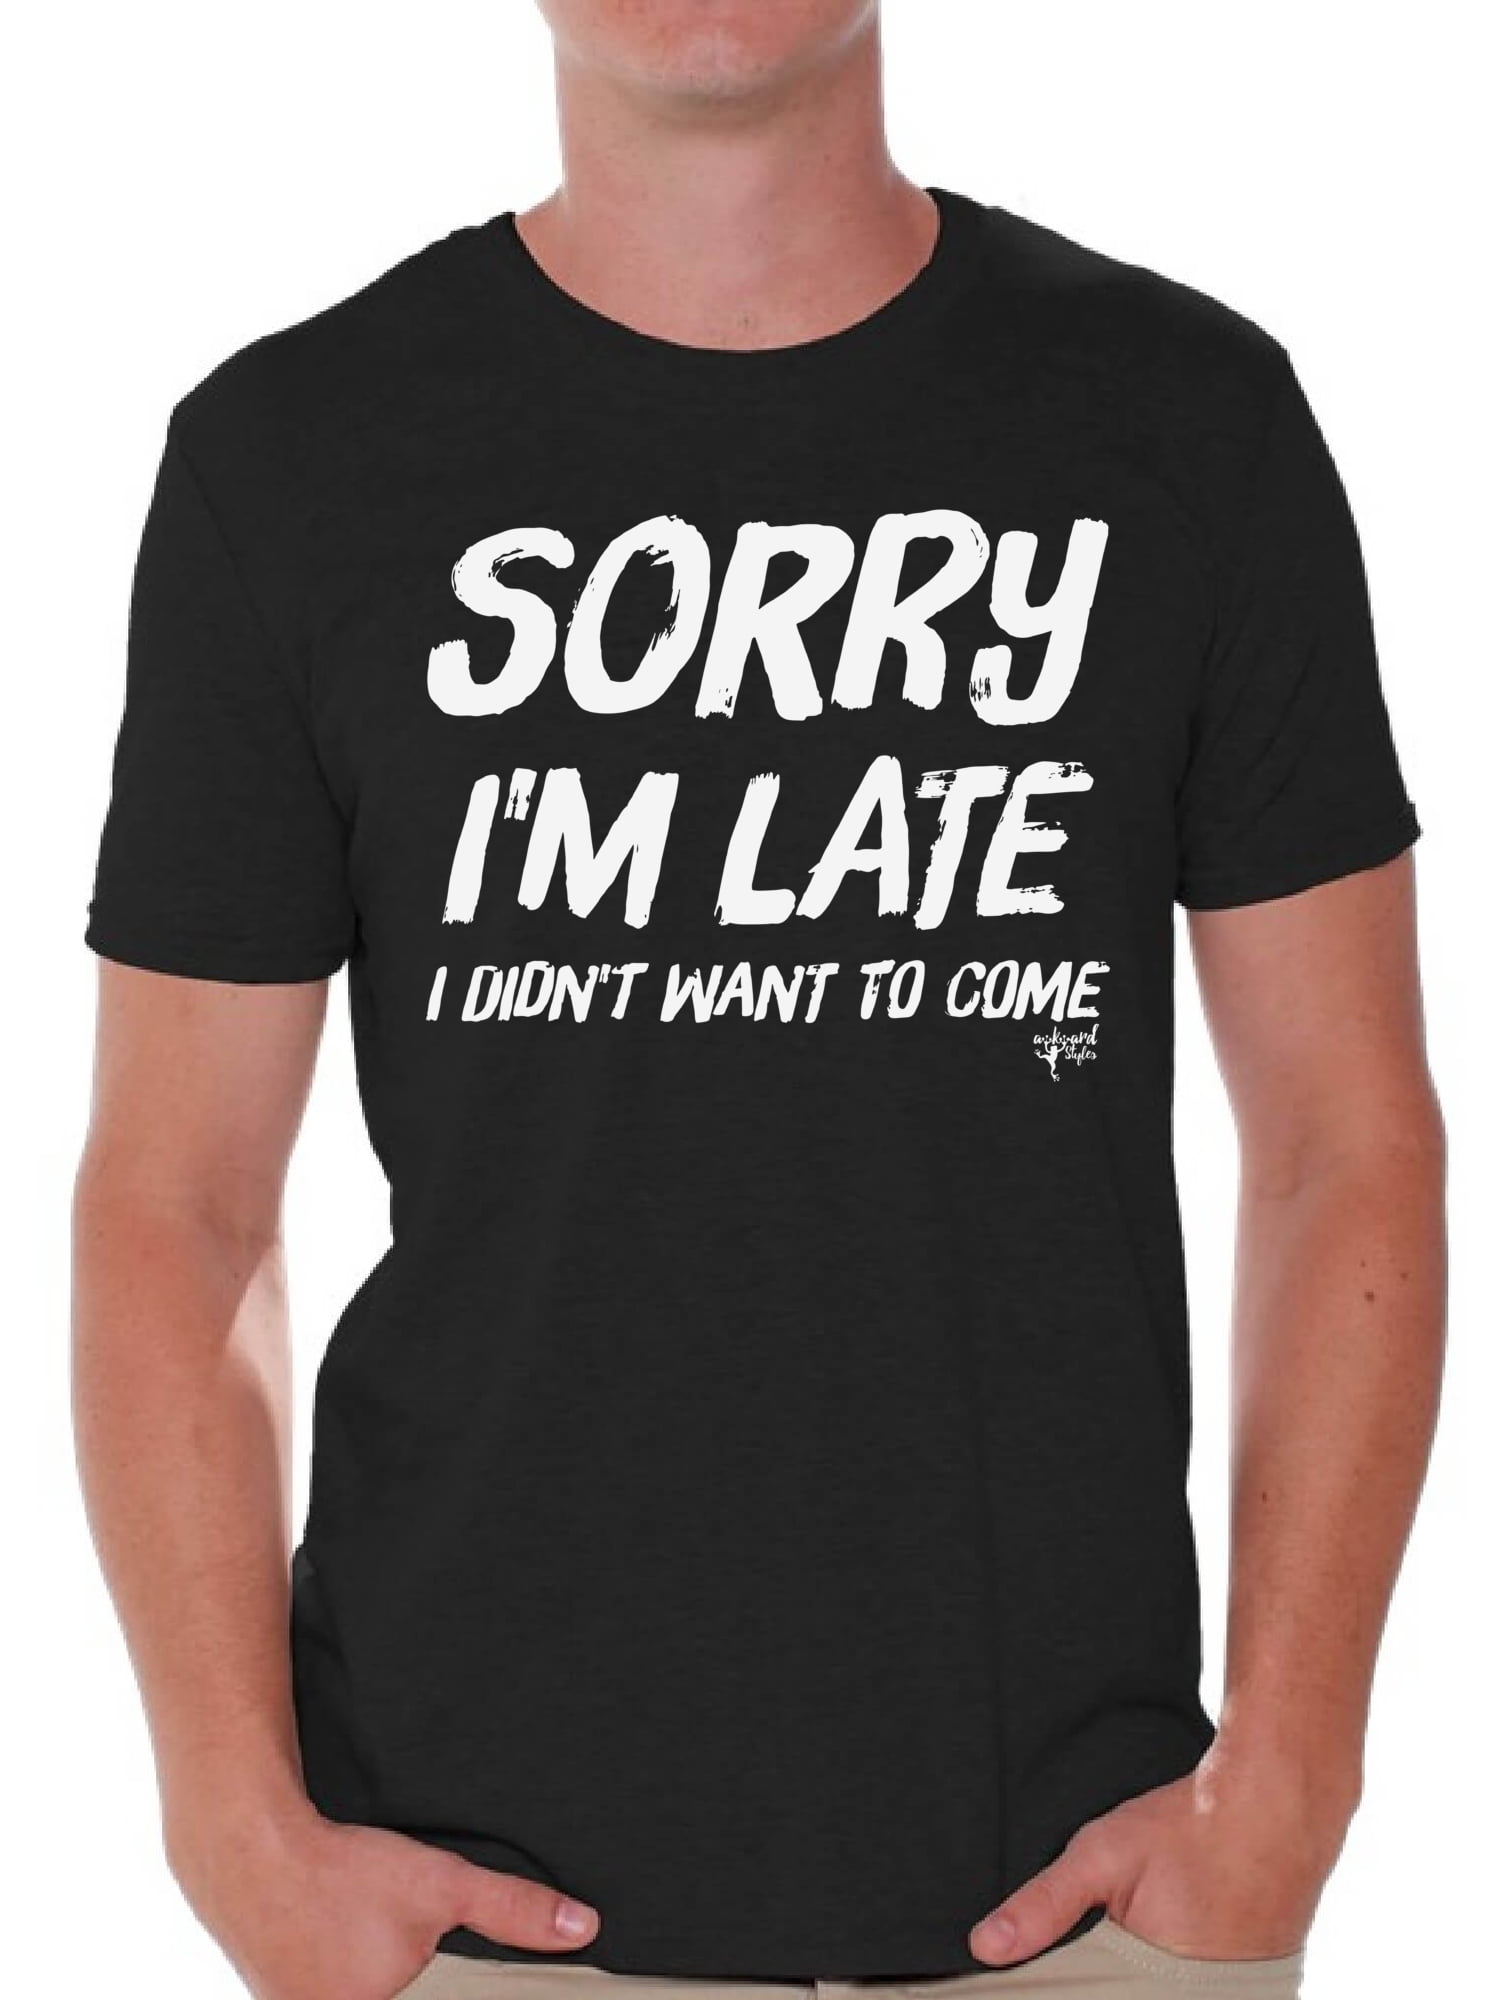 Awkward Styles Men S Humor Shirts Mens Humor Graphic Tees I M Late Lazy Shirt Mens Novelty